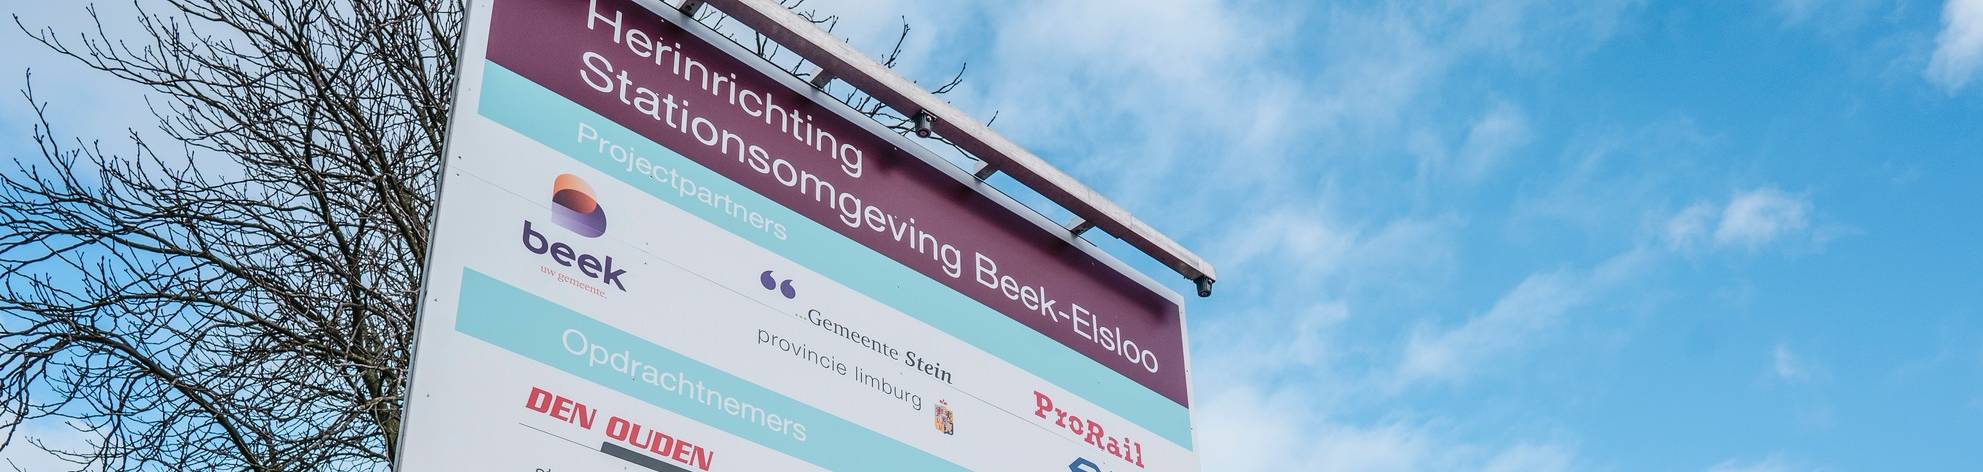 Werkzaamheden station Beek-Elsloo begonnen